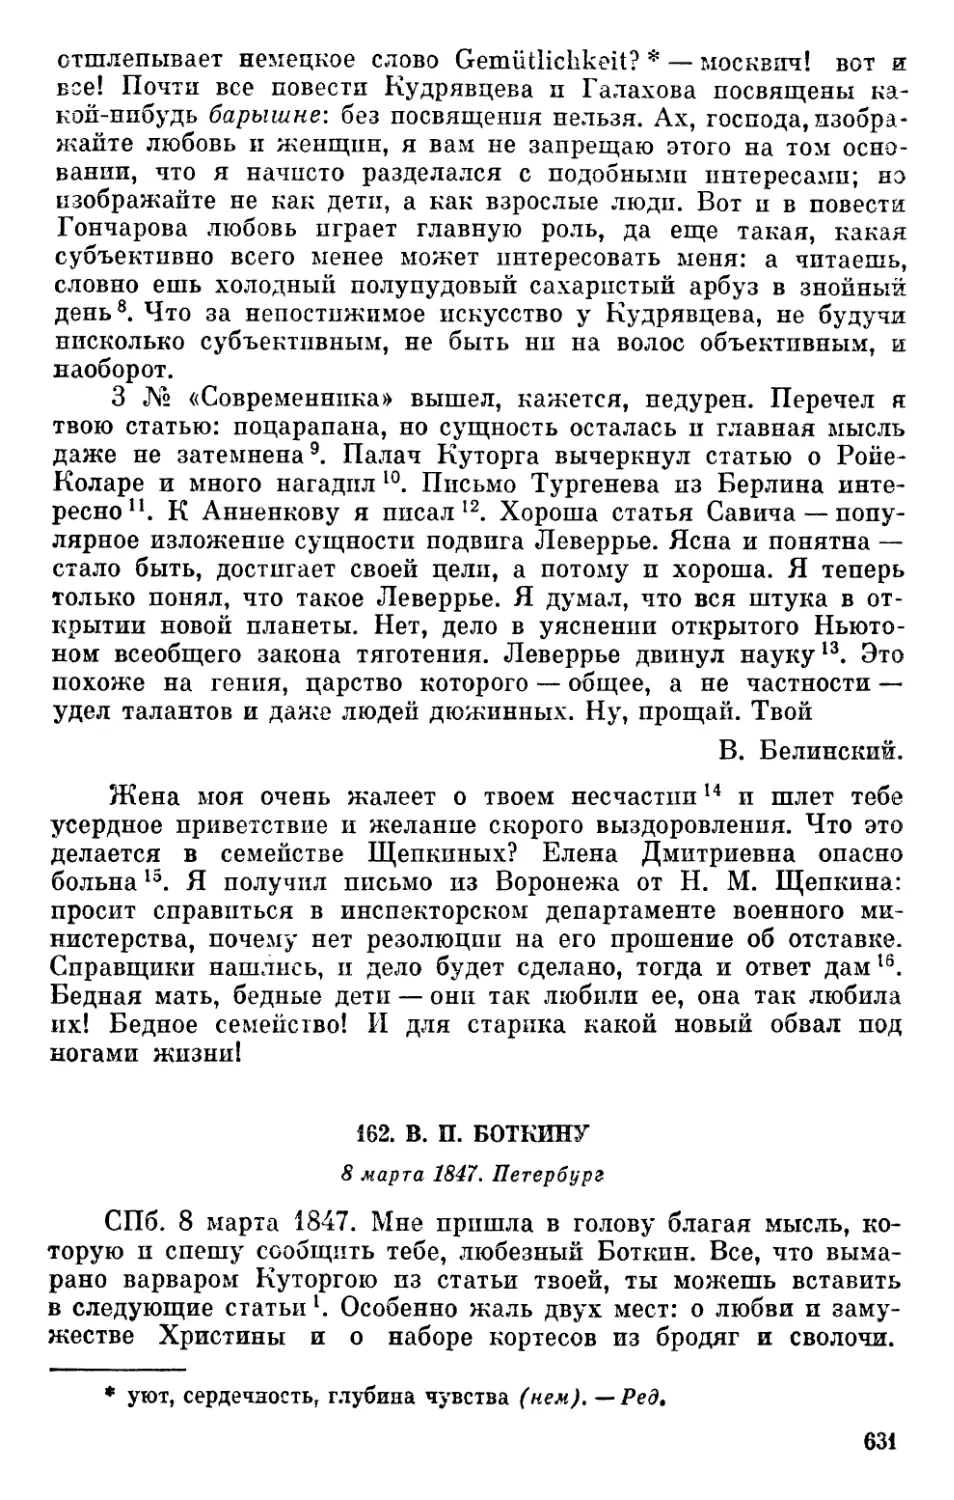 162. В. П. Боткину. 8 марта 1847